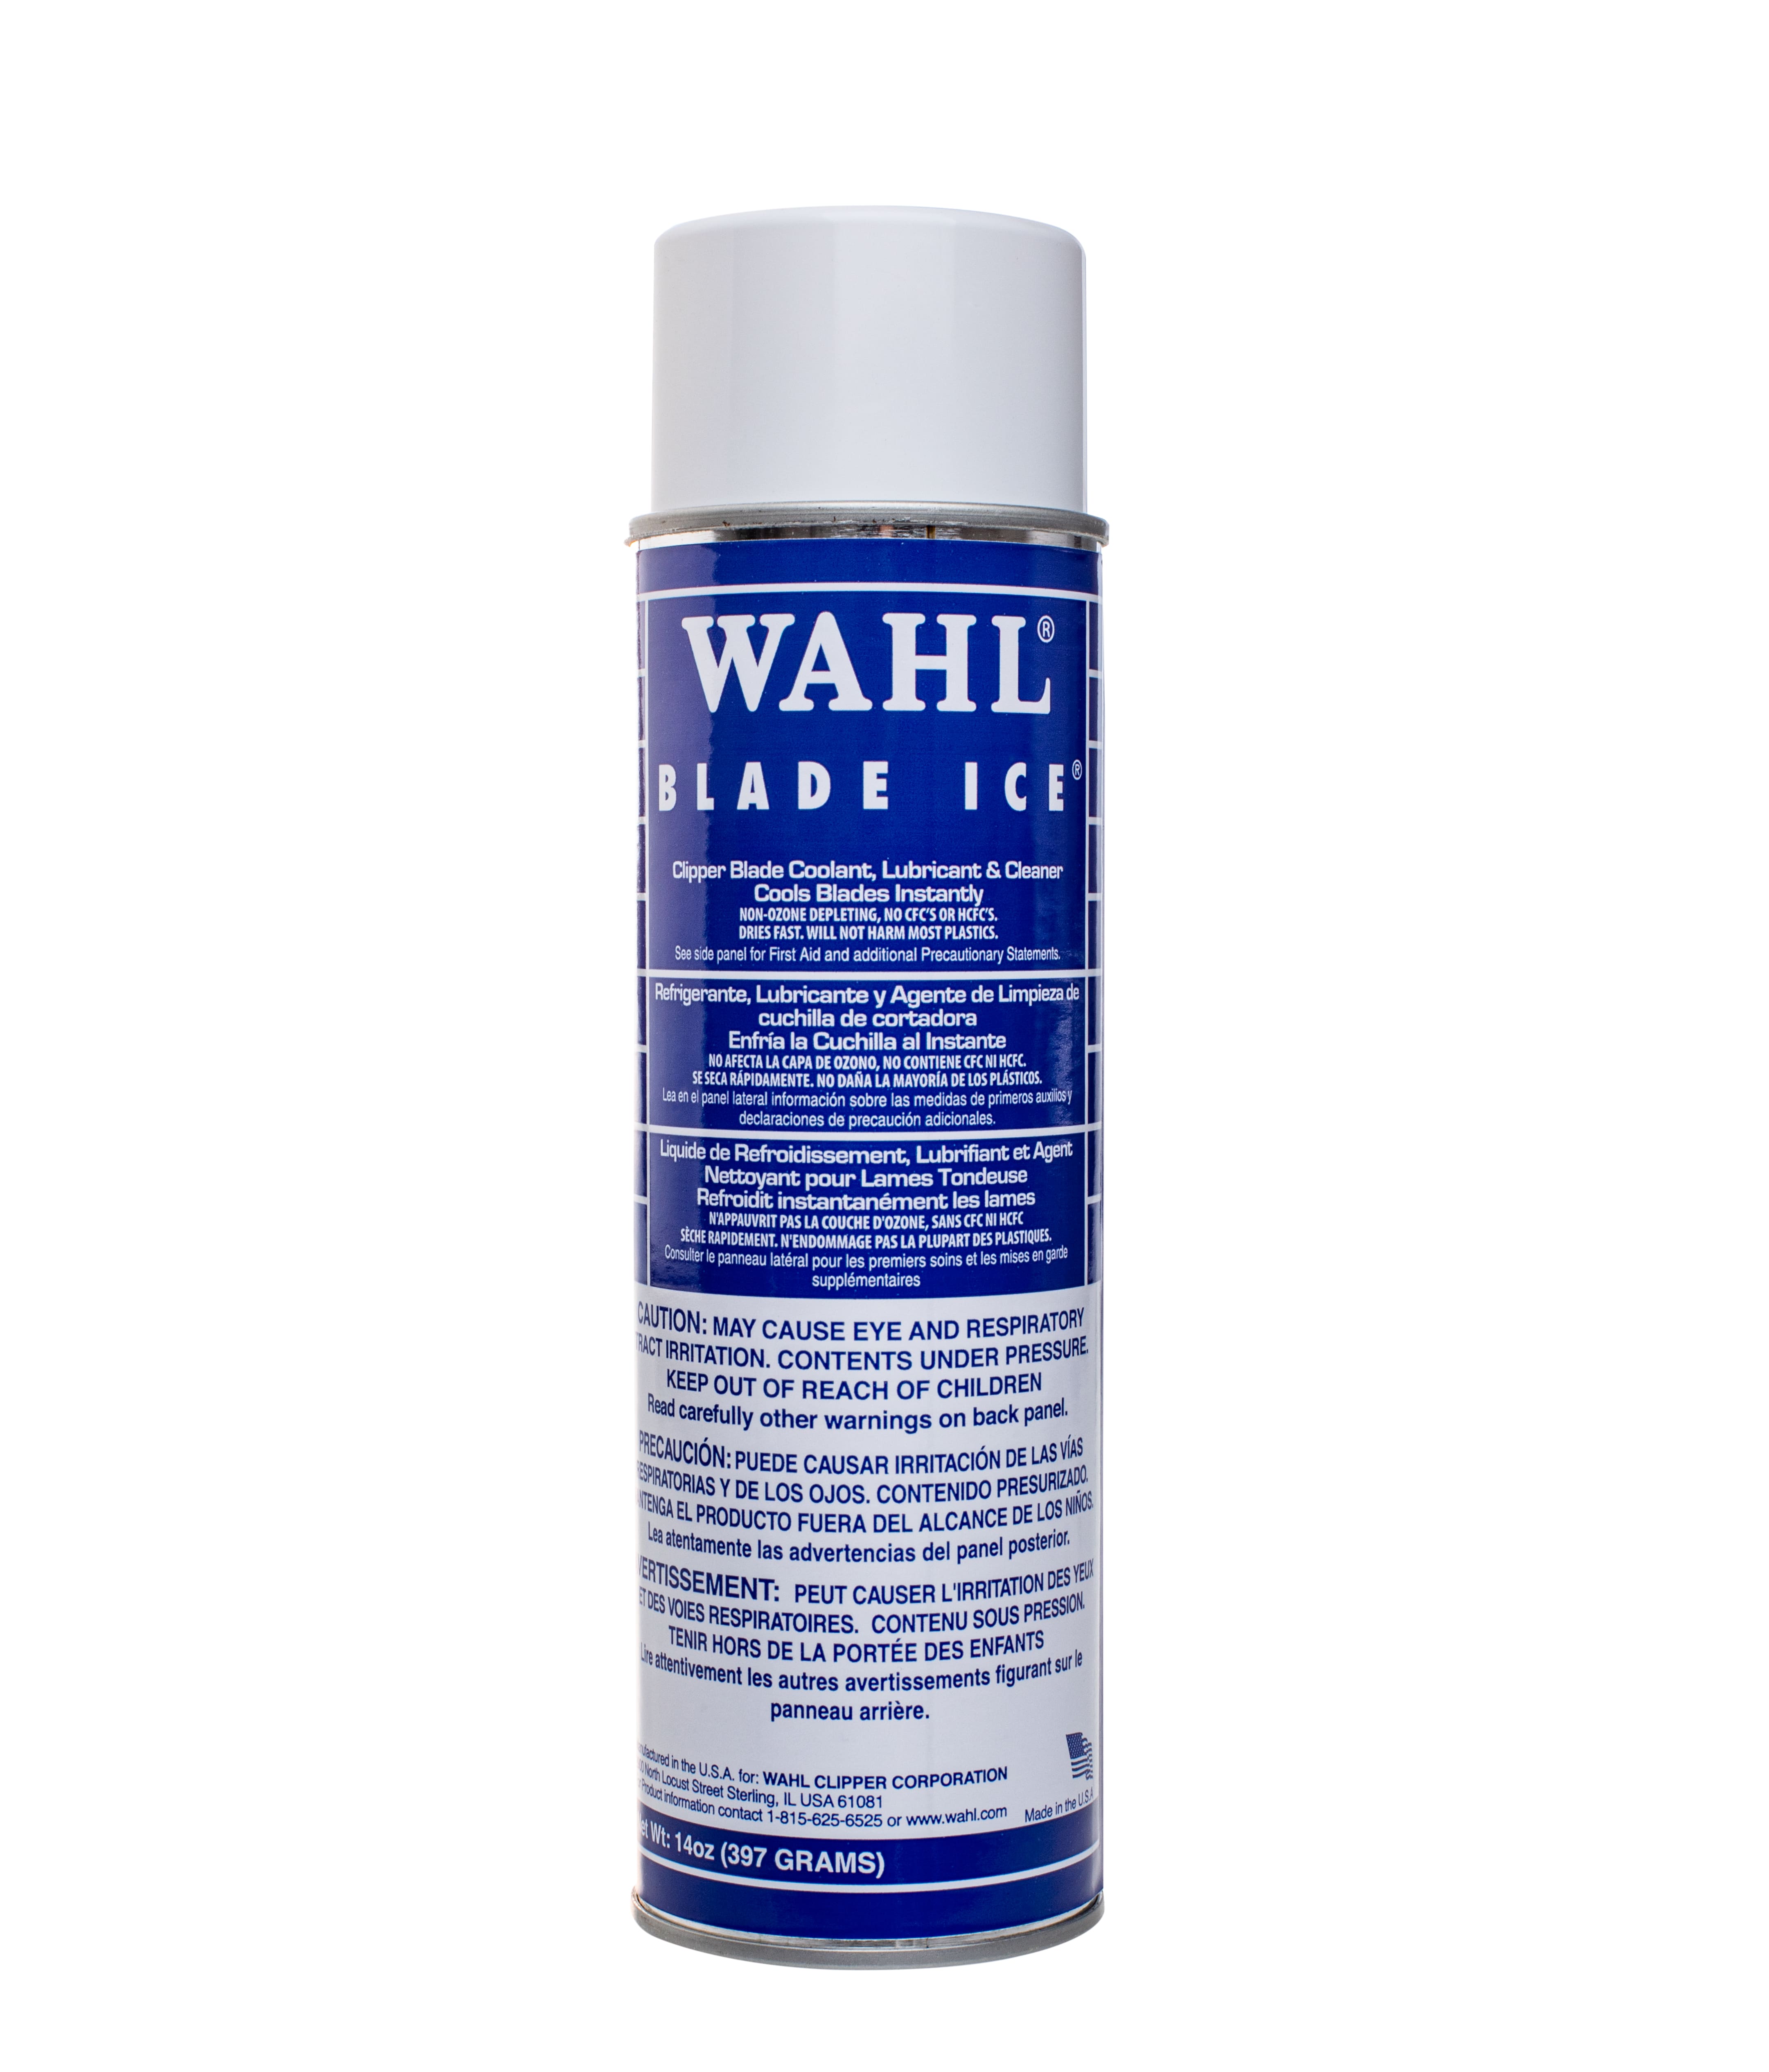 Cielo's_productos - ACEITE WAHL, ideal para el mantenimiento de máquinas  cortadoras de cabello., Aceite Para Máquina De Cortar Pelo 